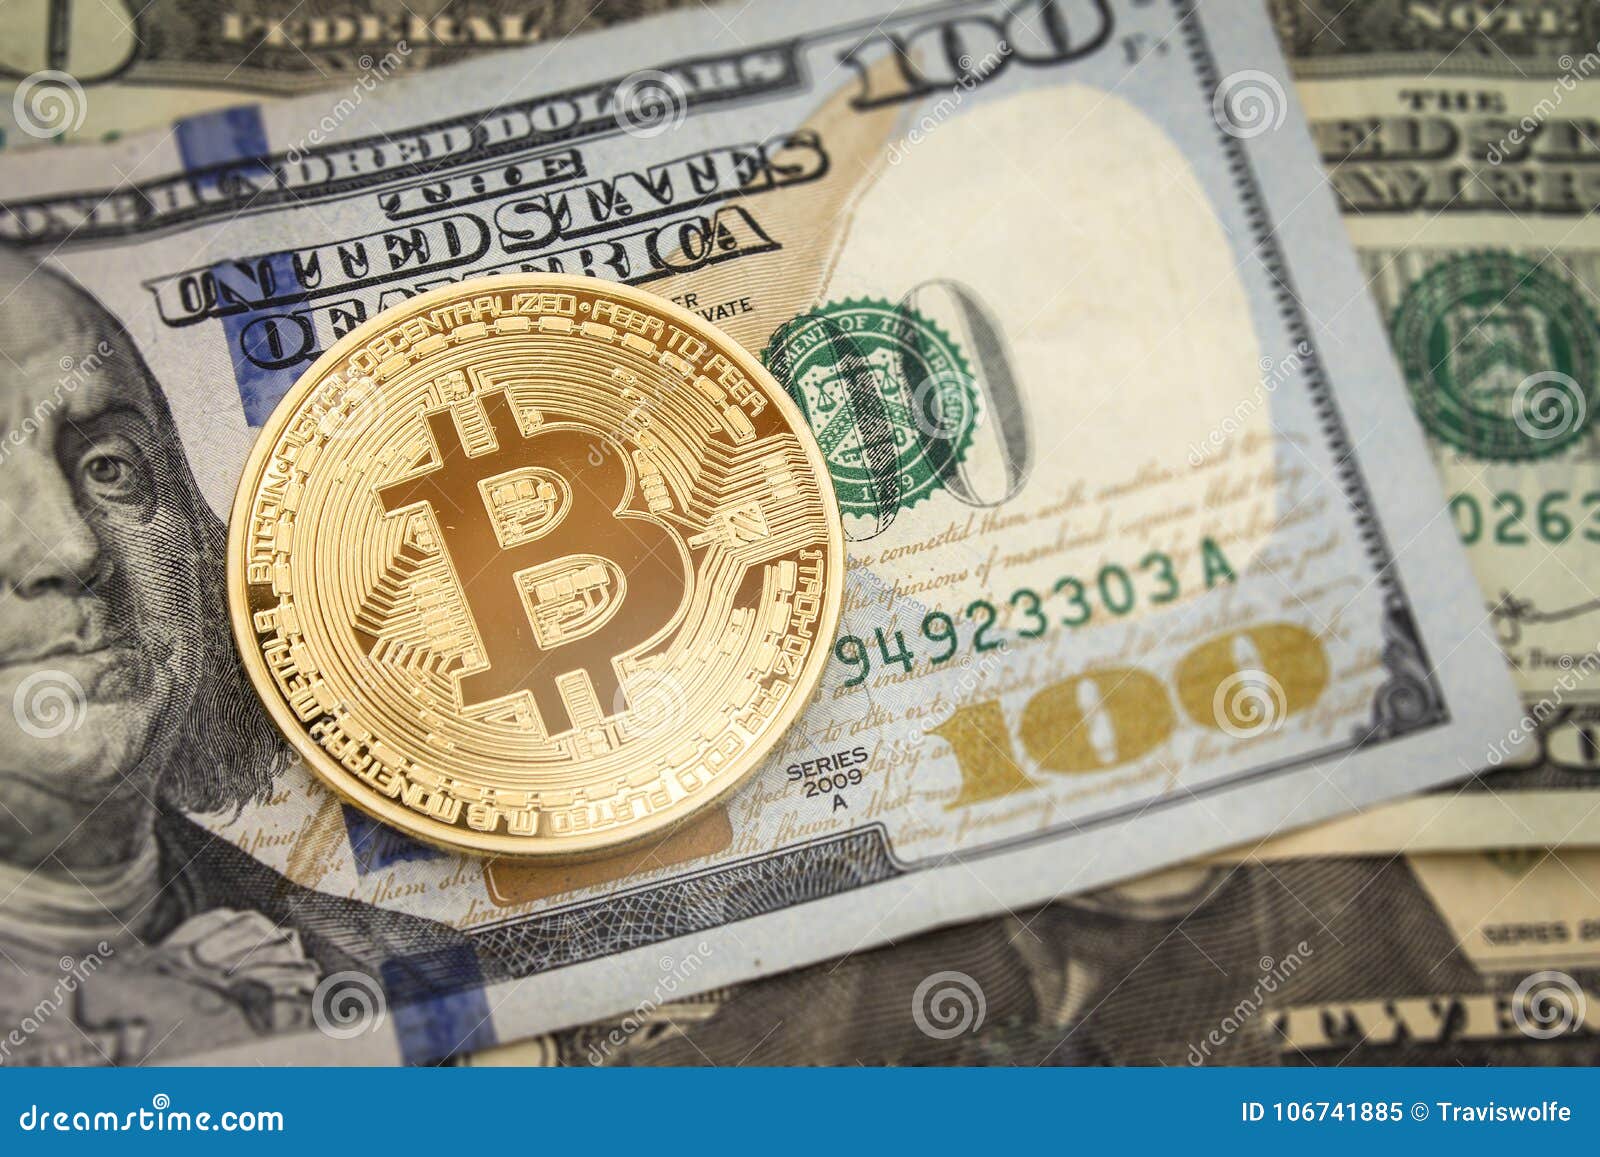 L’analisi del Bitcoin deve essere fatta in euro o in dollari?